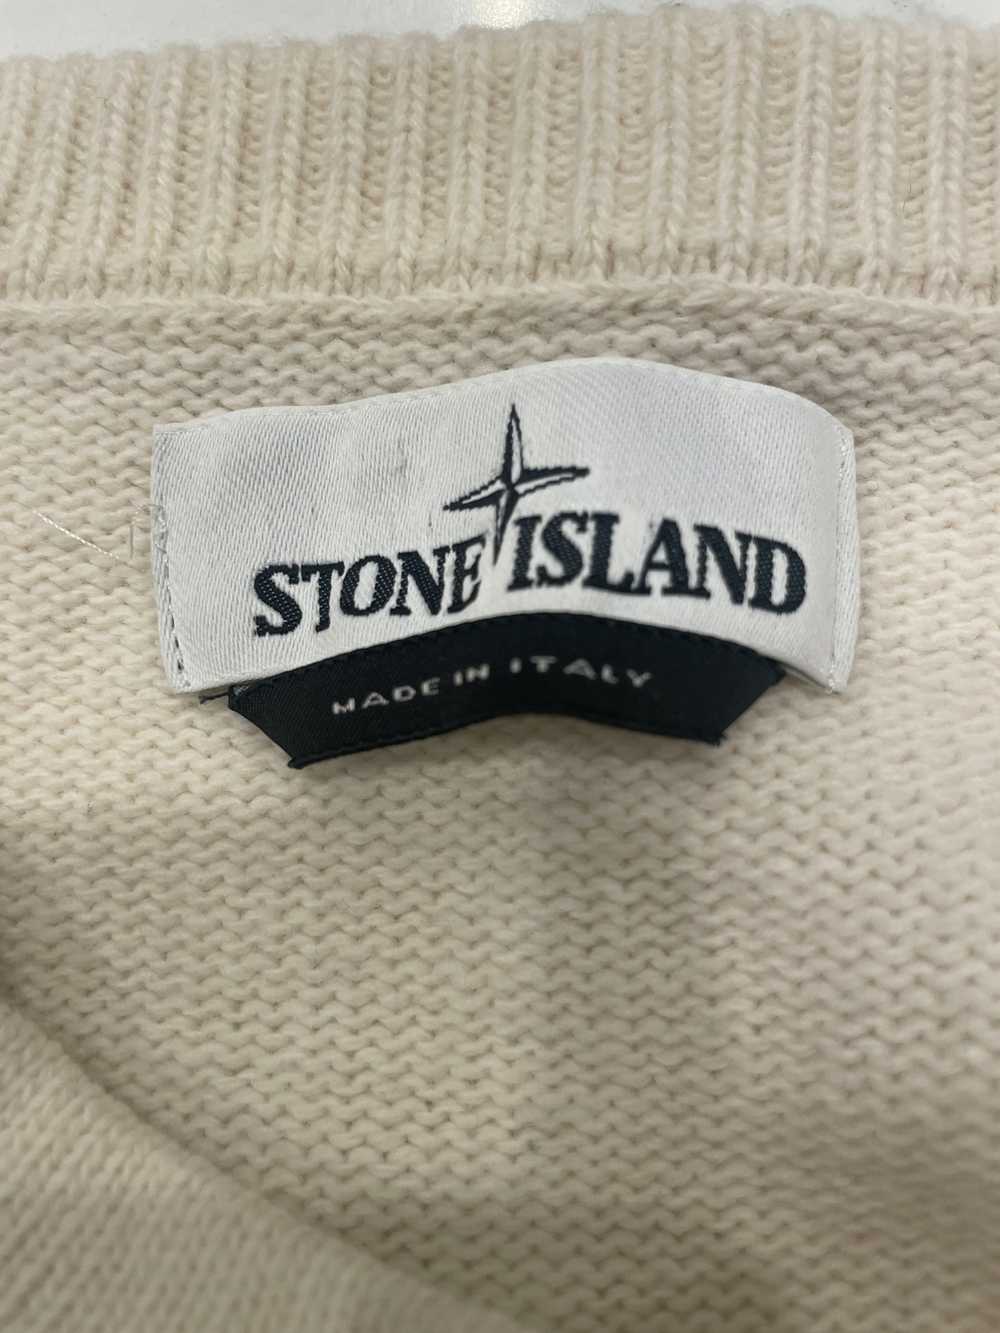 Stone Island Vintage Stone Island Knit Sweater - image 4